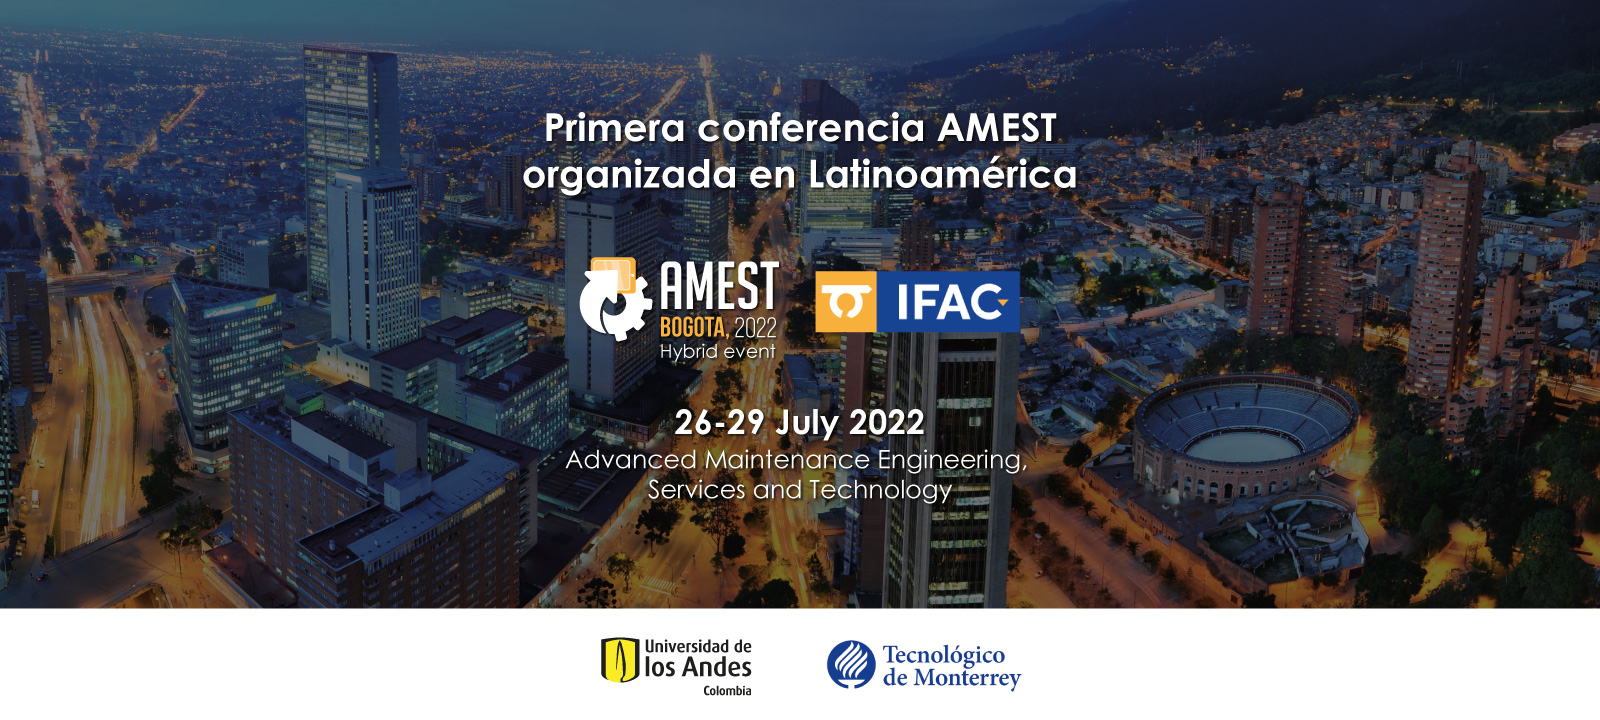 Primer conferencia AMEST en Latinoamérica, seleccionado como escenario la Universidad de Los Andes